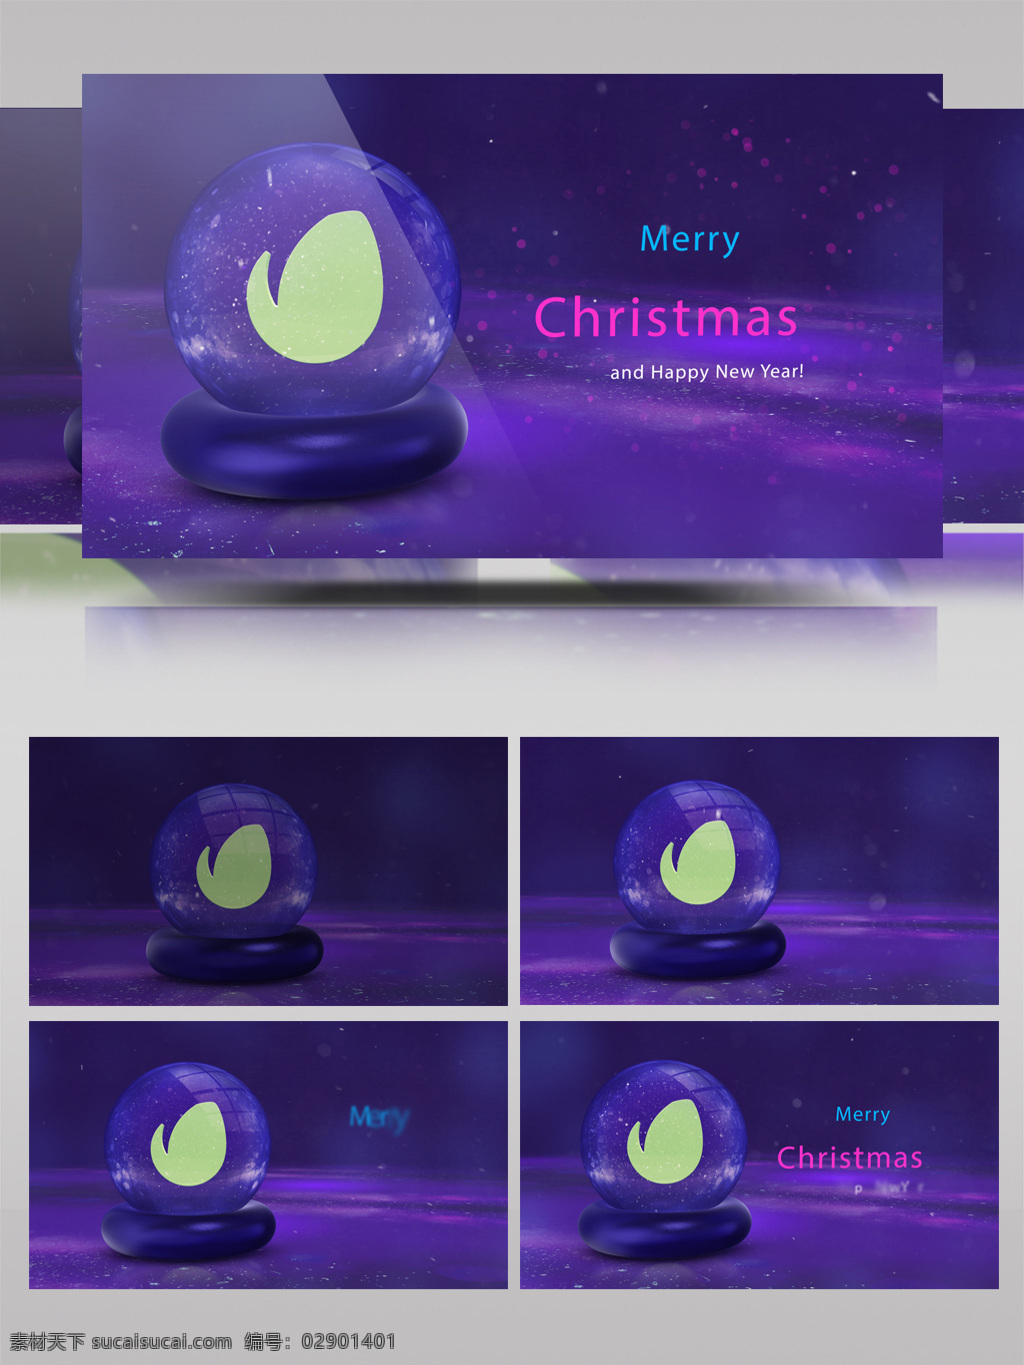 三维 效果 水晶 玻璃球 节日 主题 开场 ae 模板 水晶球 圣诞节 下雪 祝福 片头 3d效果